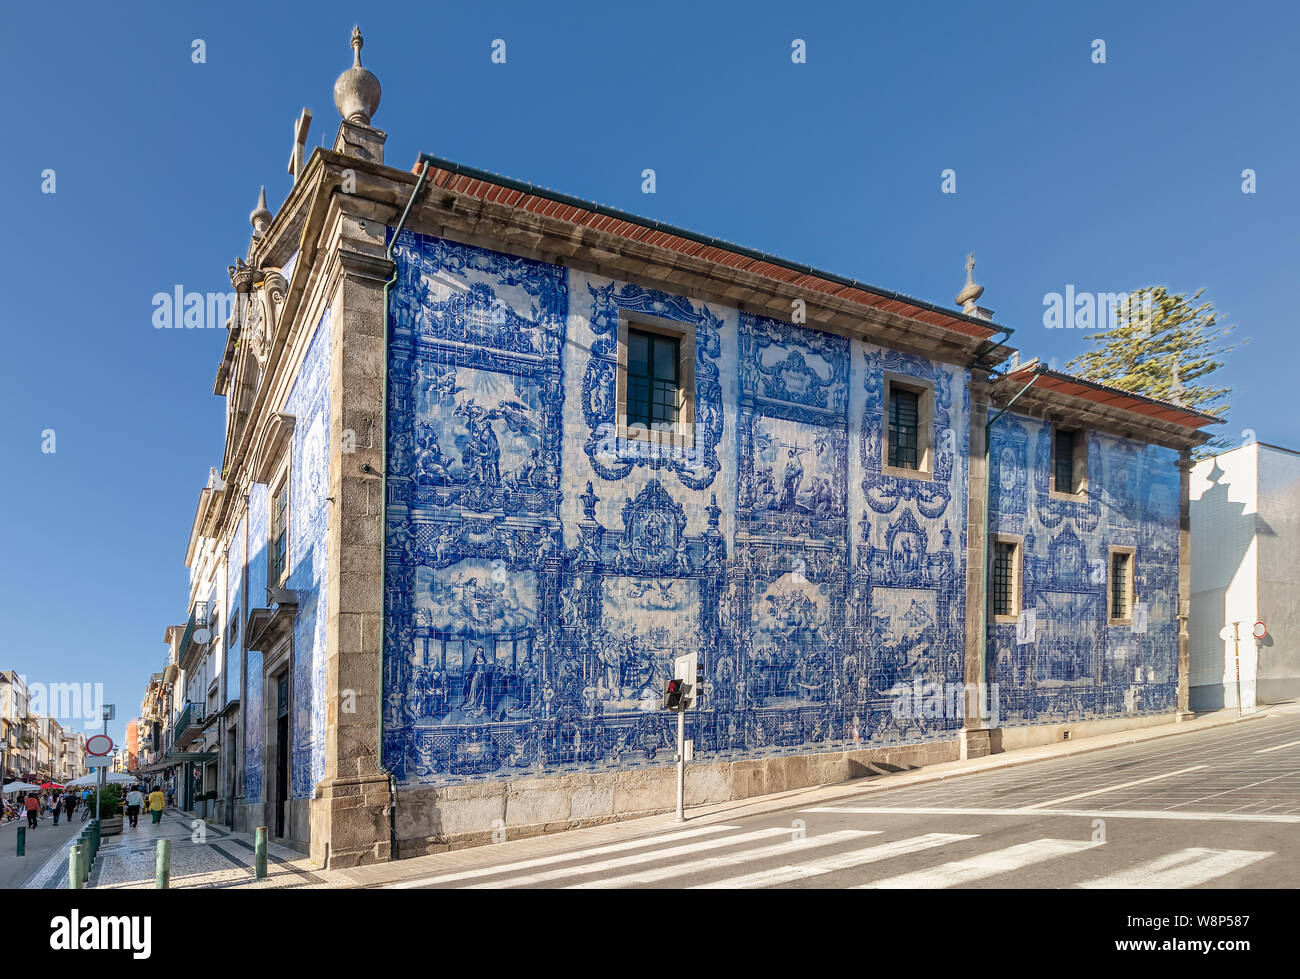 Exterior facade of Chapel Of Souls (Capela das Almas de Santa Catarina) on the Santa Catarina Street in Porto, Portugal Stock Photo